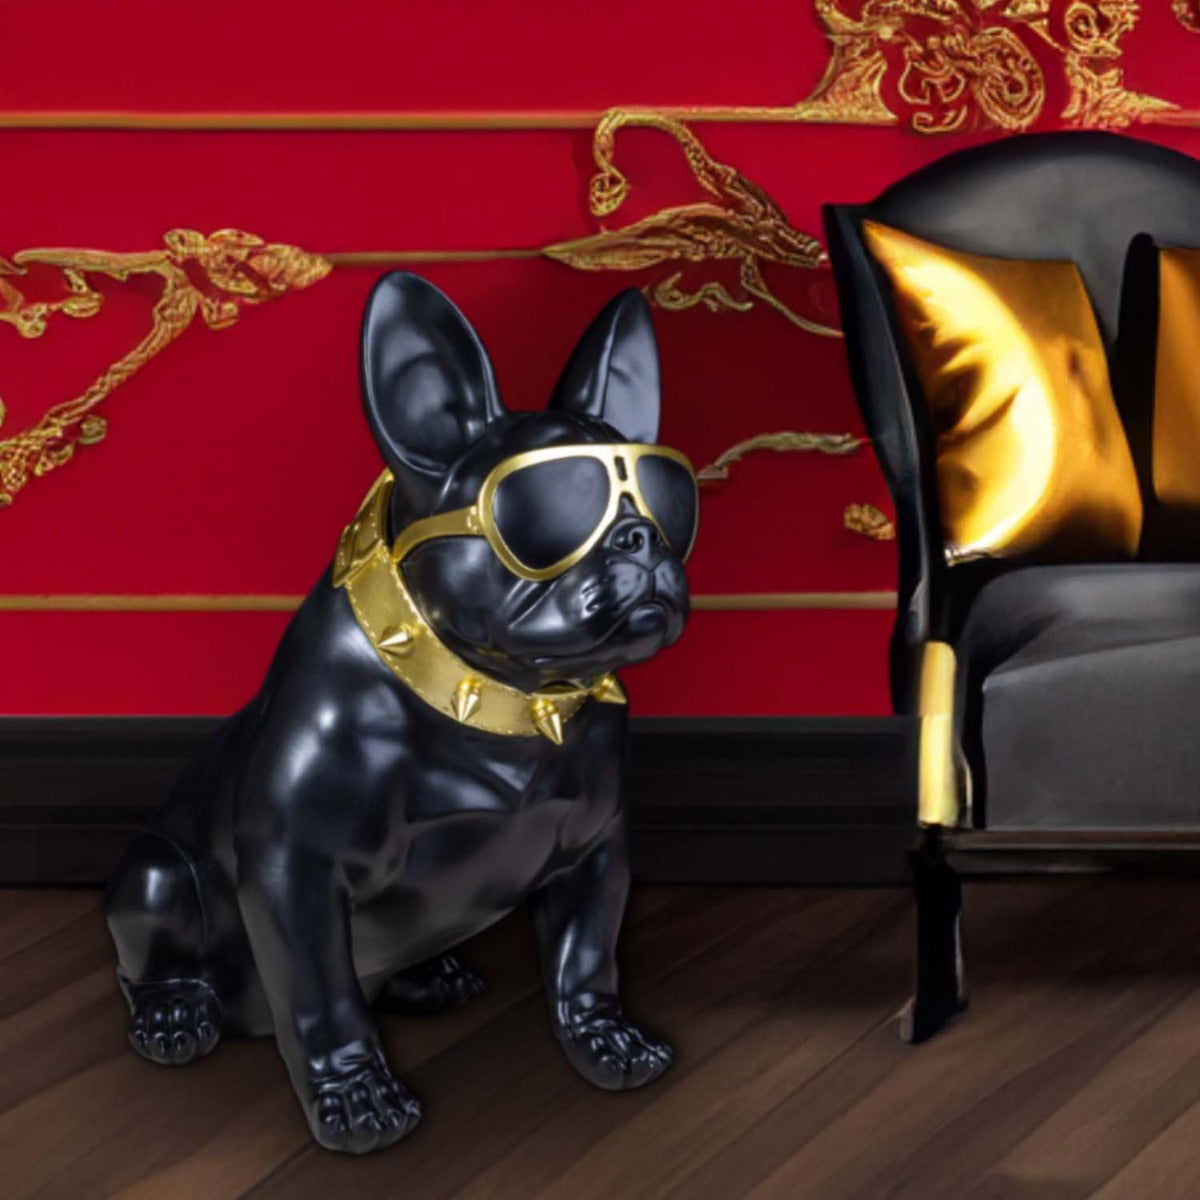 Französische Bulldogge Deko Hundefigur Siggi groß mit Brille und Nietenhalsband Deko Bulldogge schwarz